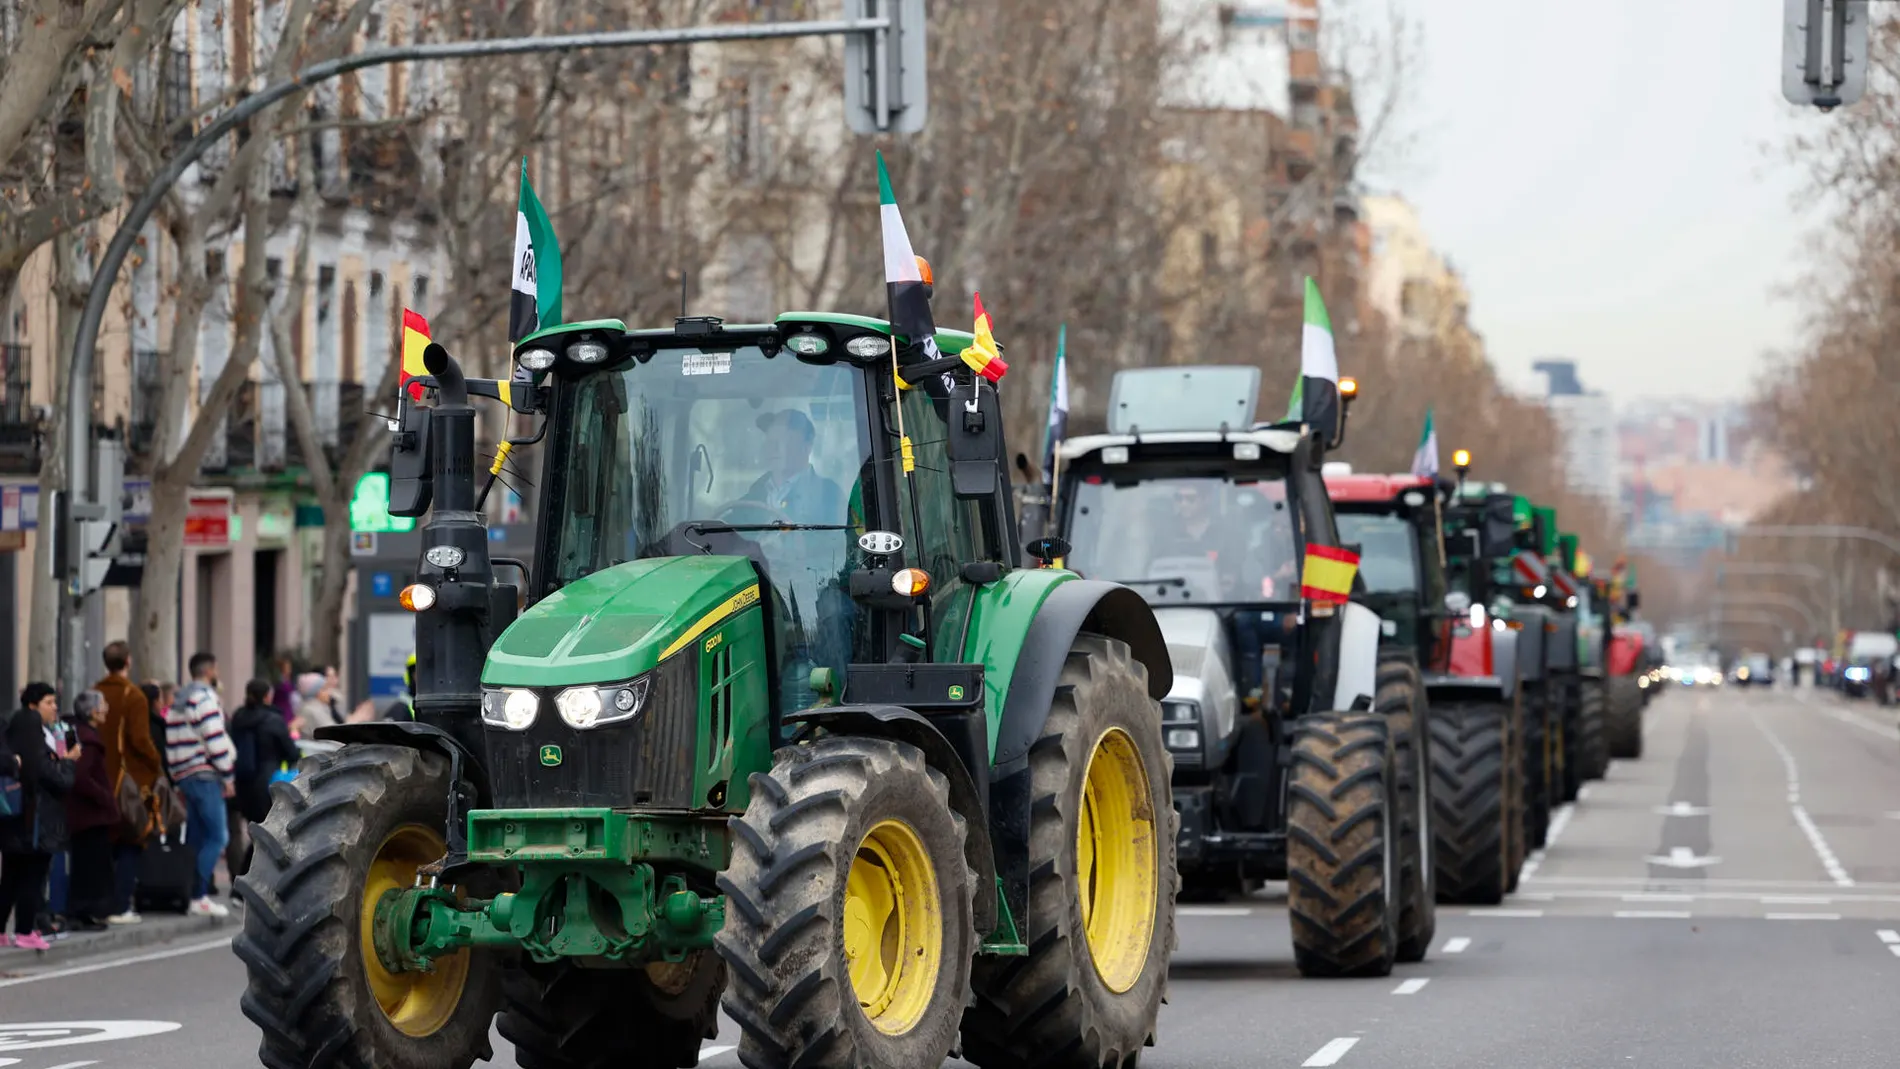 Tractores por el centro de Madrid 